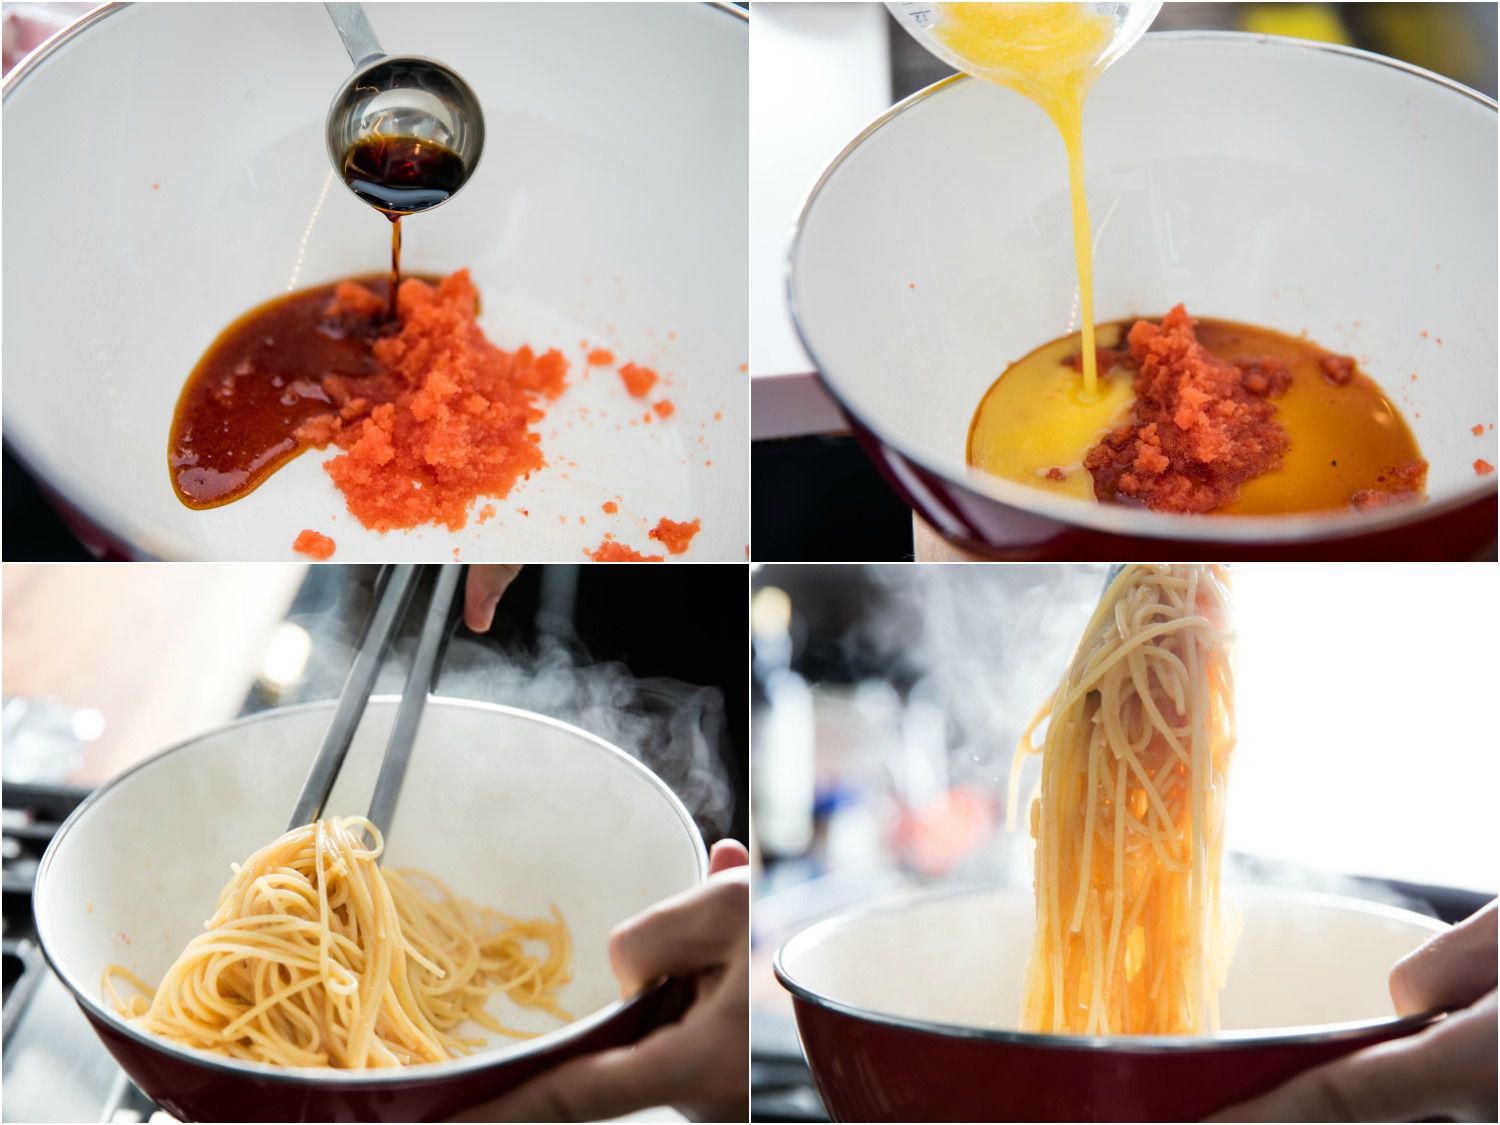 四个图像。首先,mentaiko添加到碗里加上酱油。第二,加入融化的黄油。最后两张图片显示热气腾腾的面条被涂在混合物。